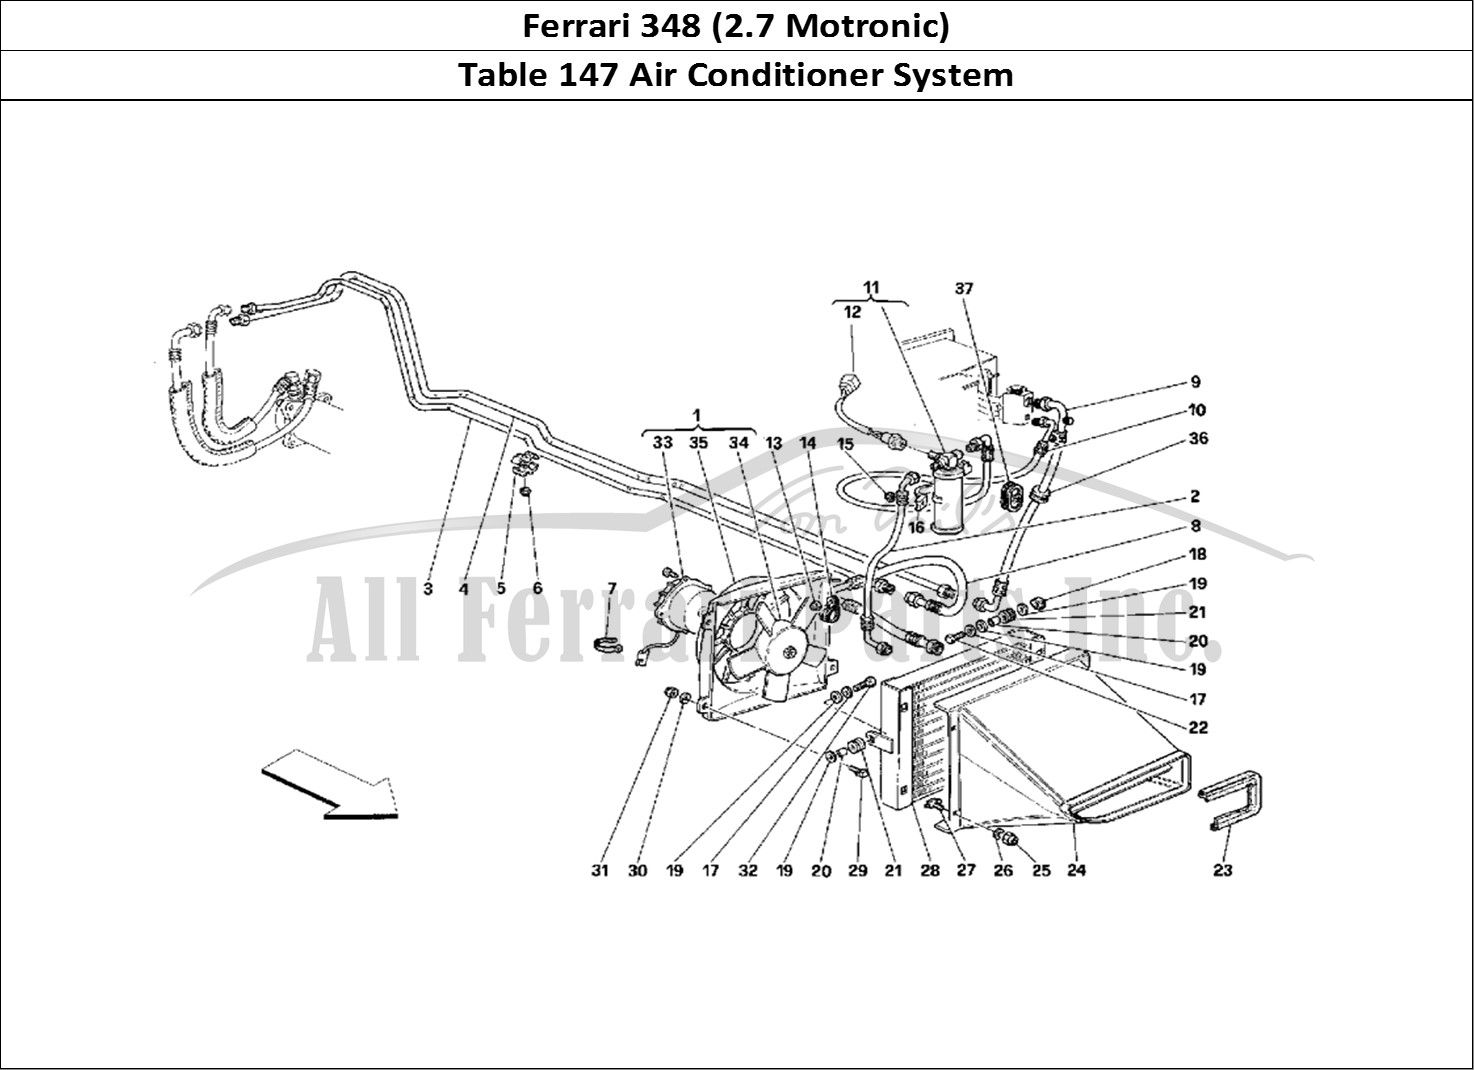 Ferrari Parts Ferrari 348 (2.7 Motronic) Page 147 Air Conditioning System